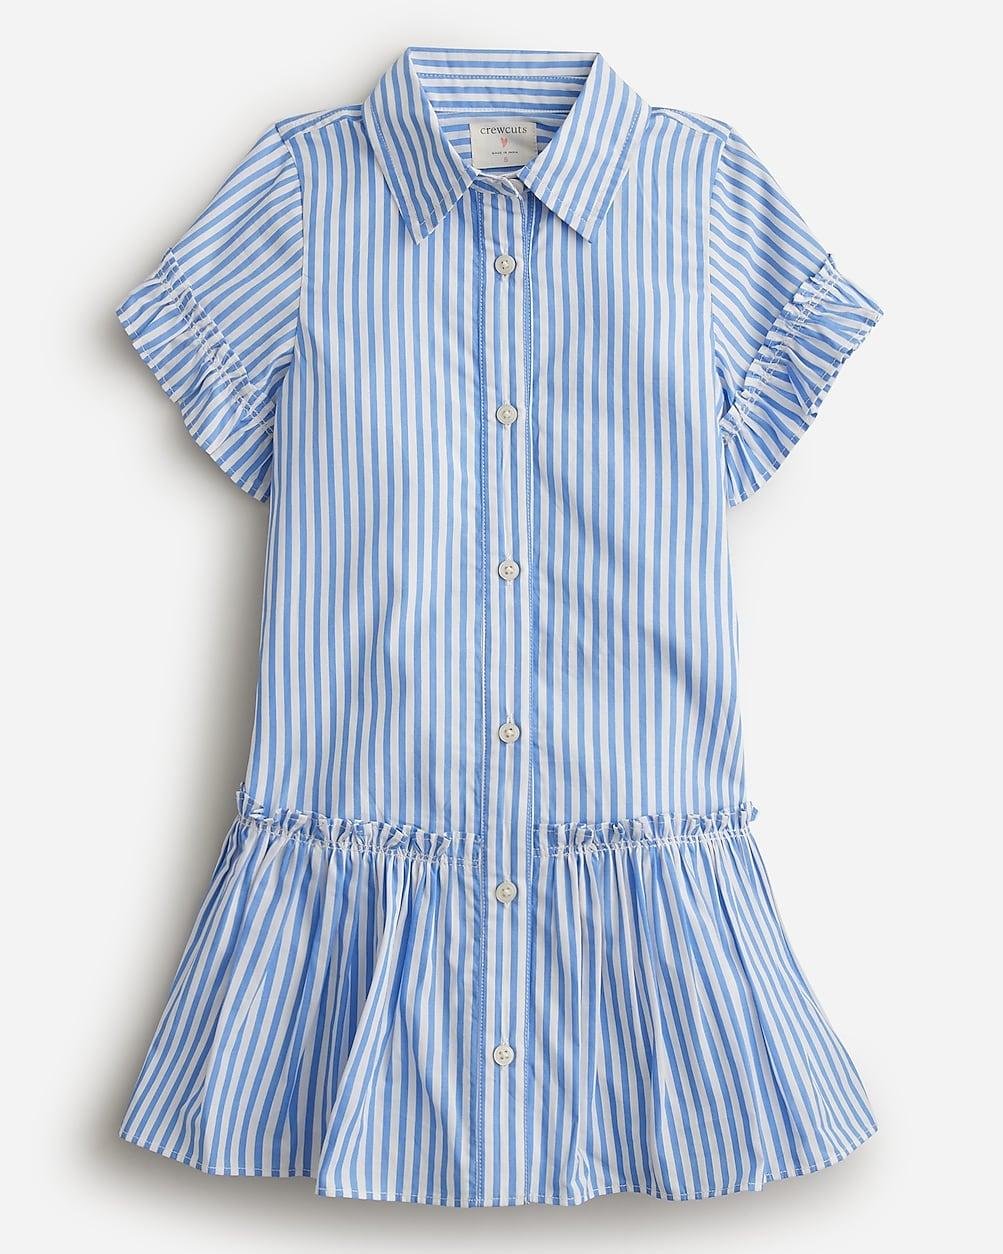 Girls' Amelia shirtdress in cotton poplin by J.CREW